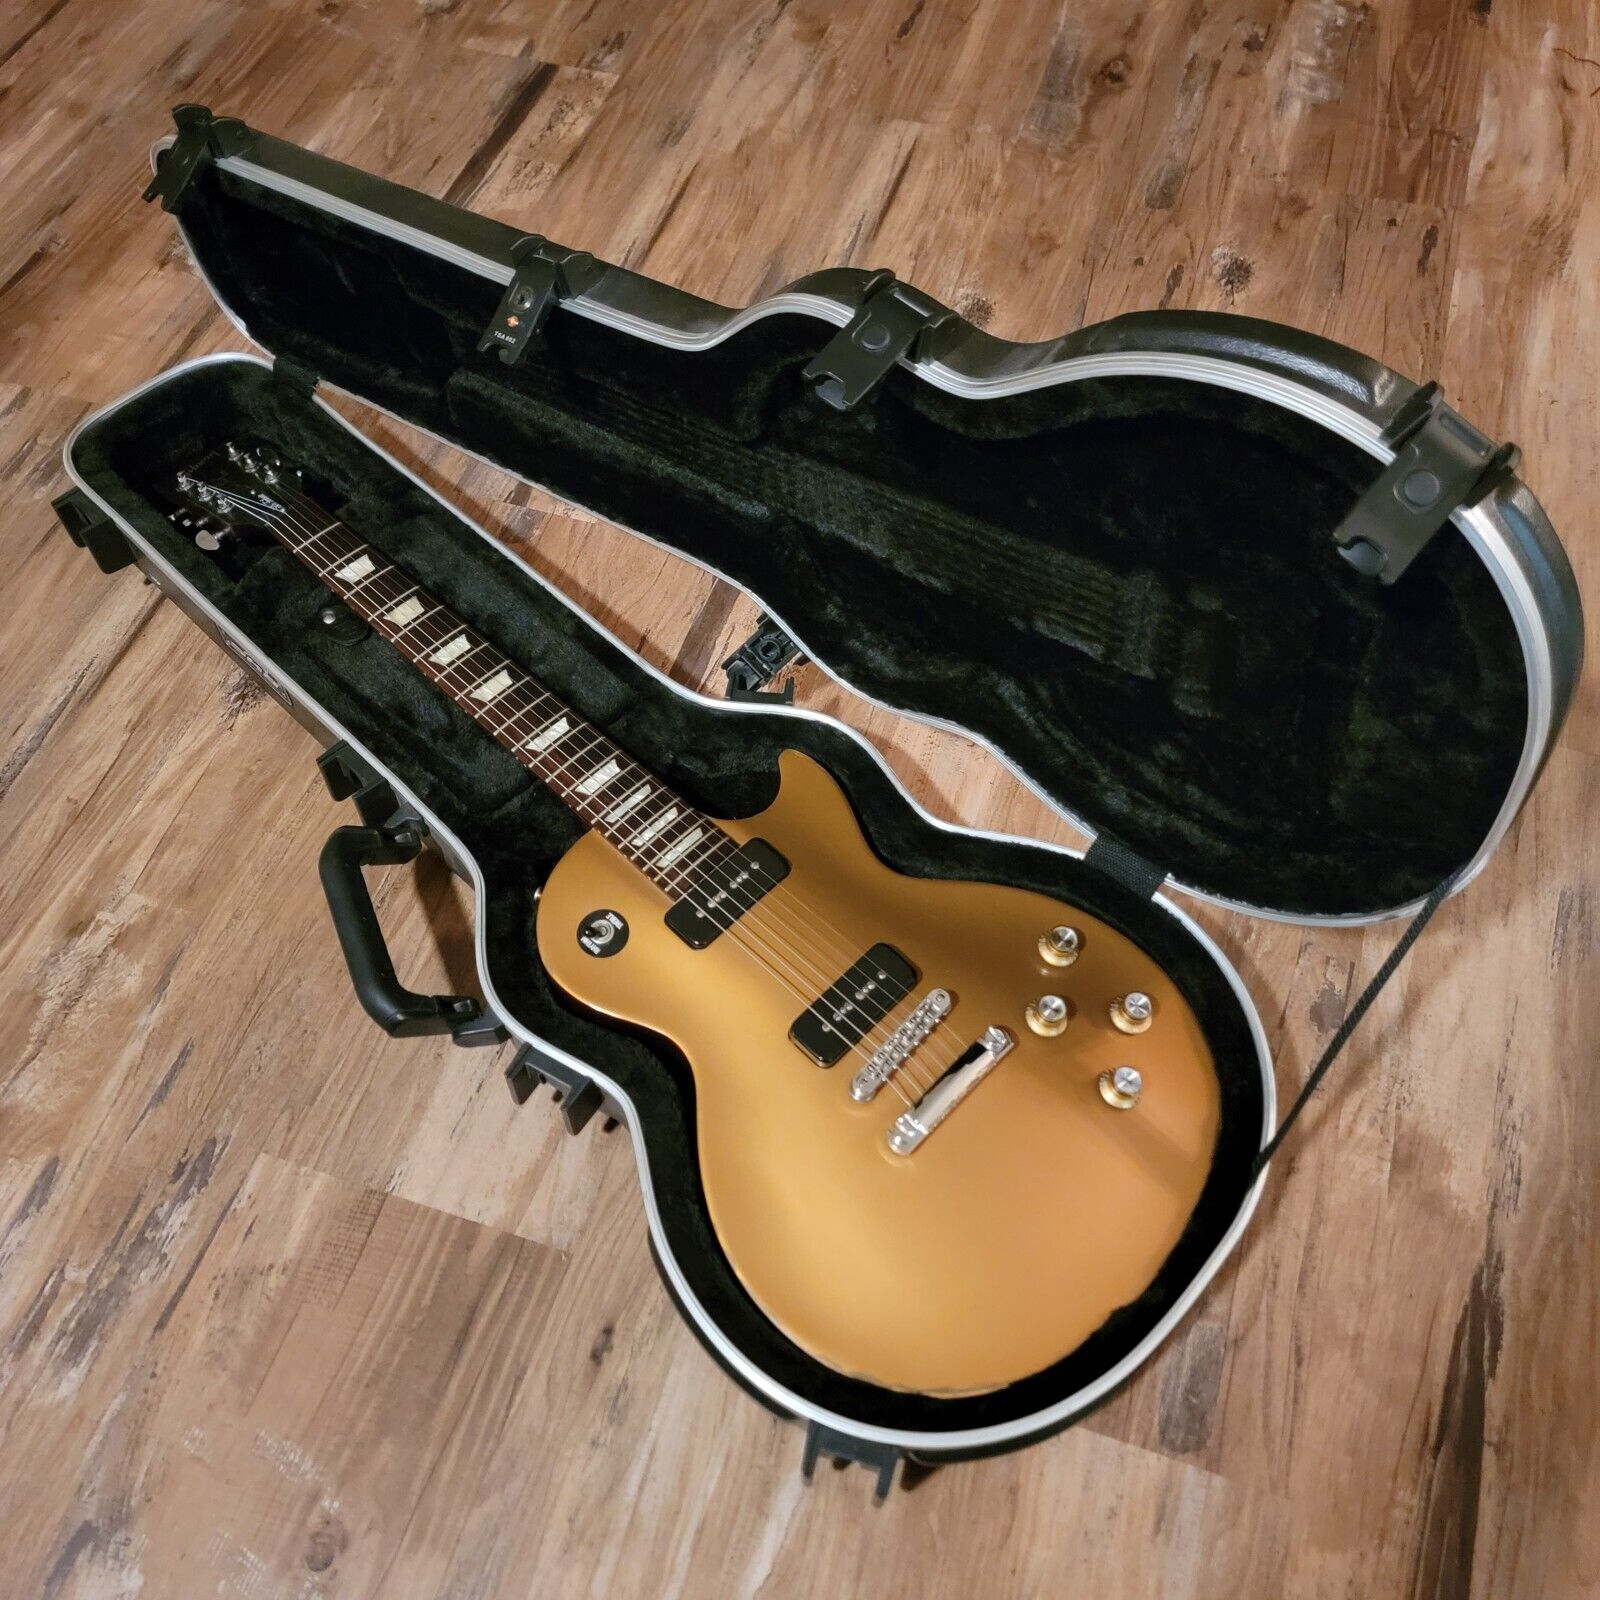 2012 Gibson Les Paul 50s Tribute P90 Gold Top Electric Guitar Original W/HSC Uncategorized 